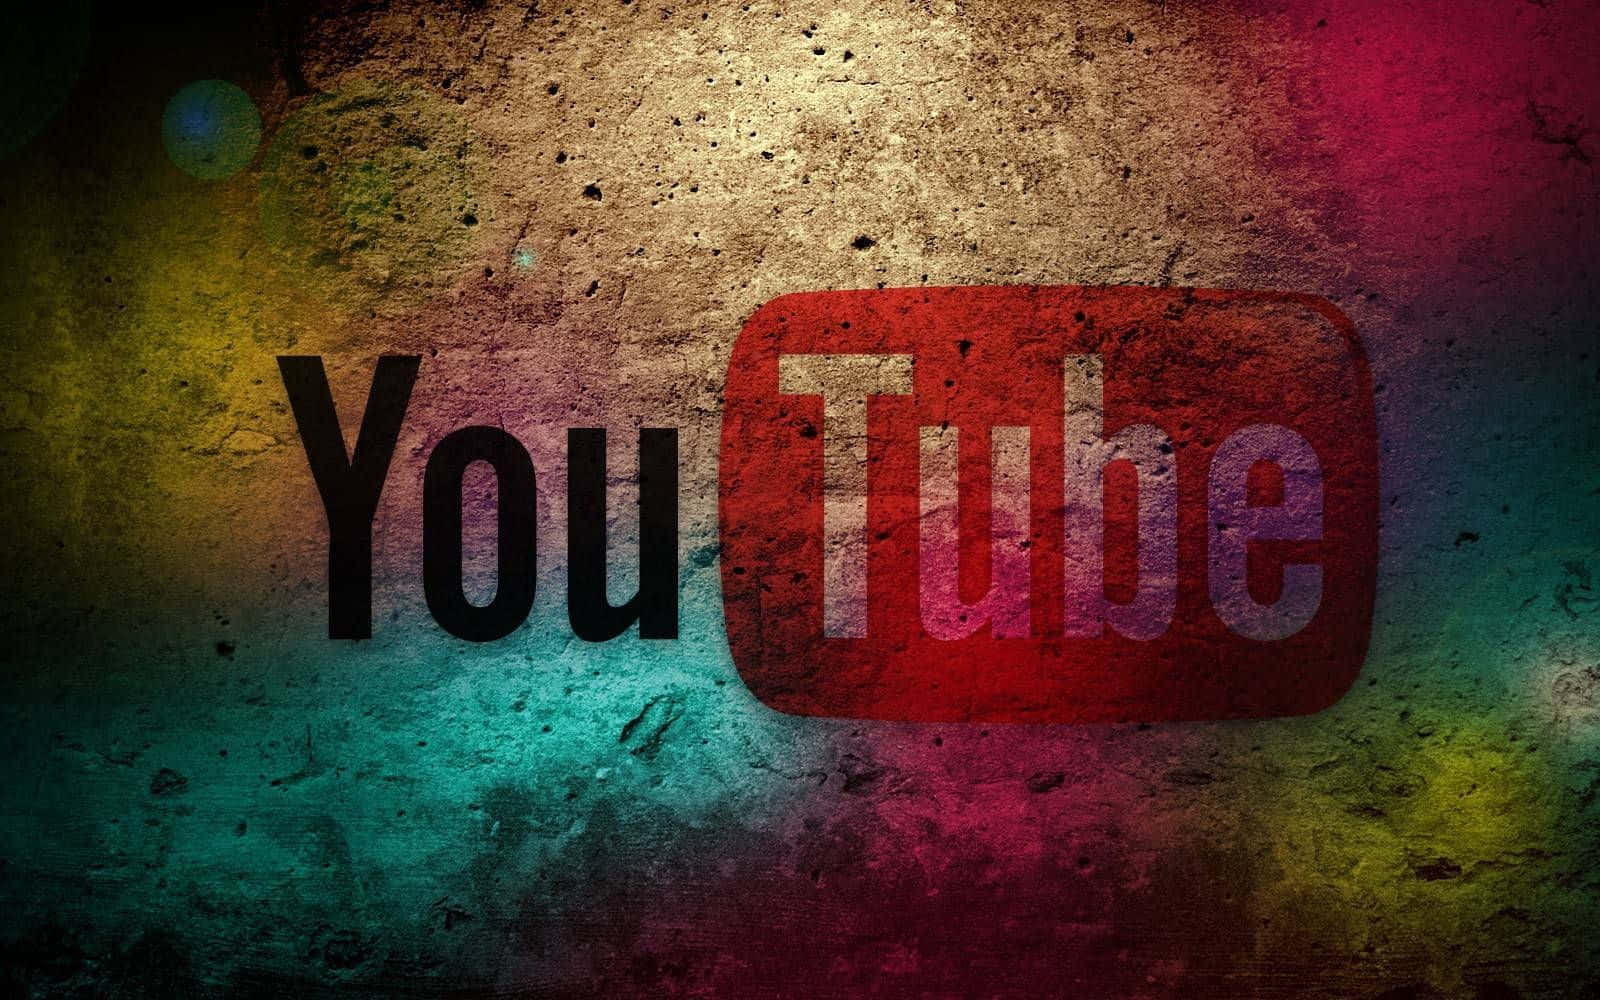 Logotipode Youtube En Color Negro